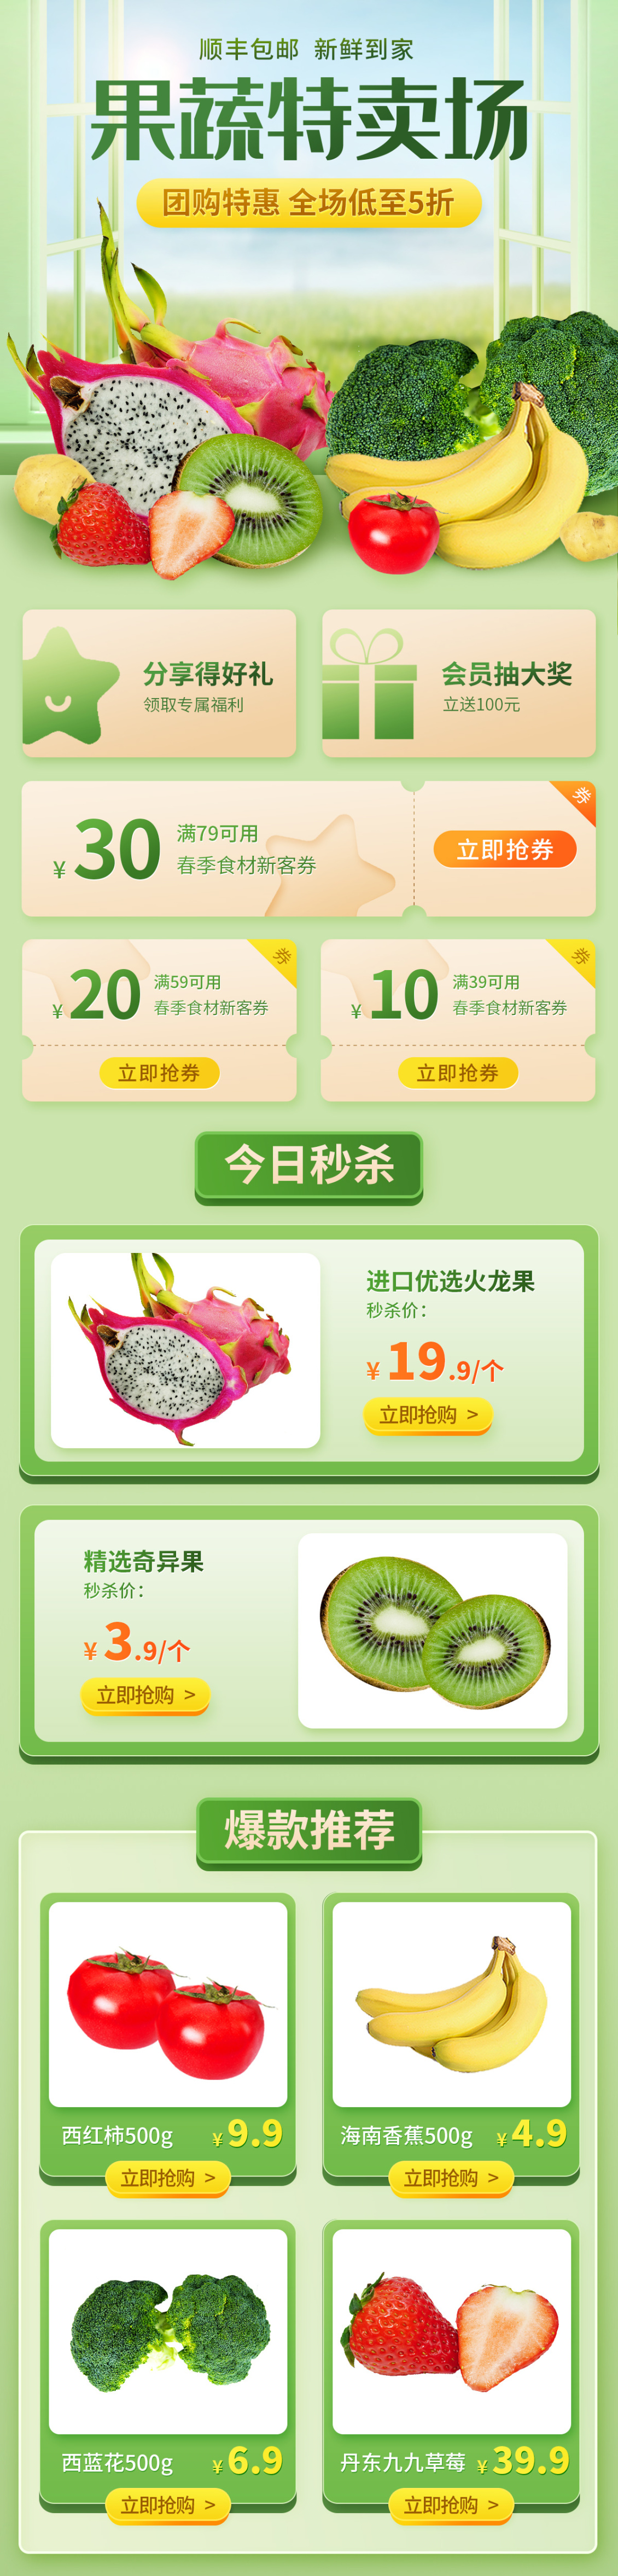 淘宝美工晓夏食品保健  水果蔬菜  首页作品